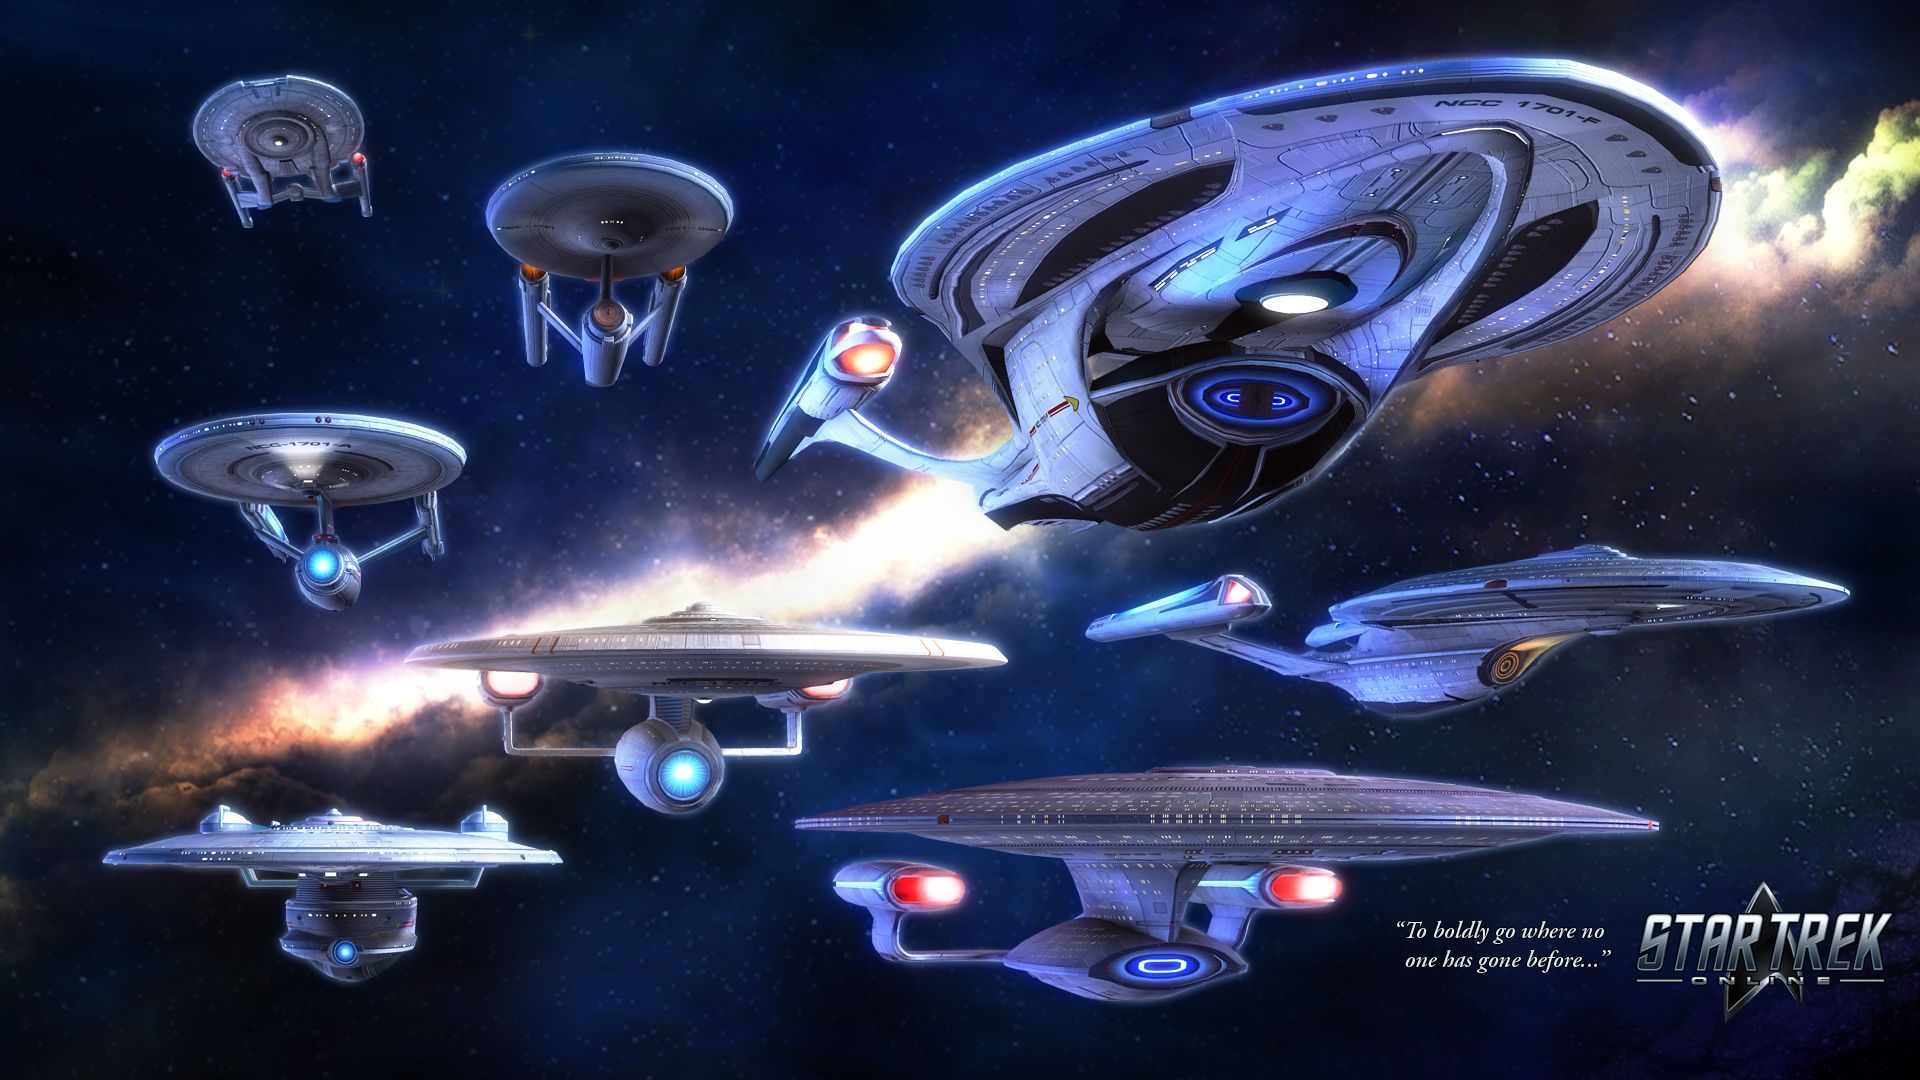 Star Trek Enterprise Wallpaper Free Star Trek Enterprise Background